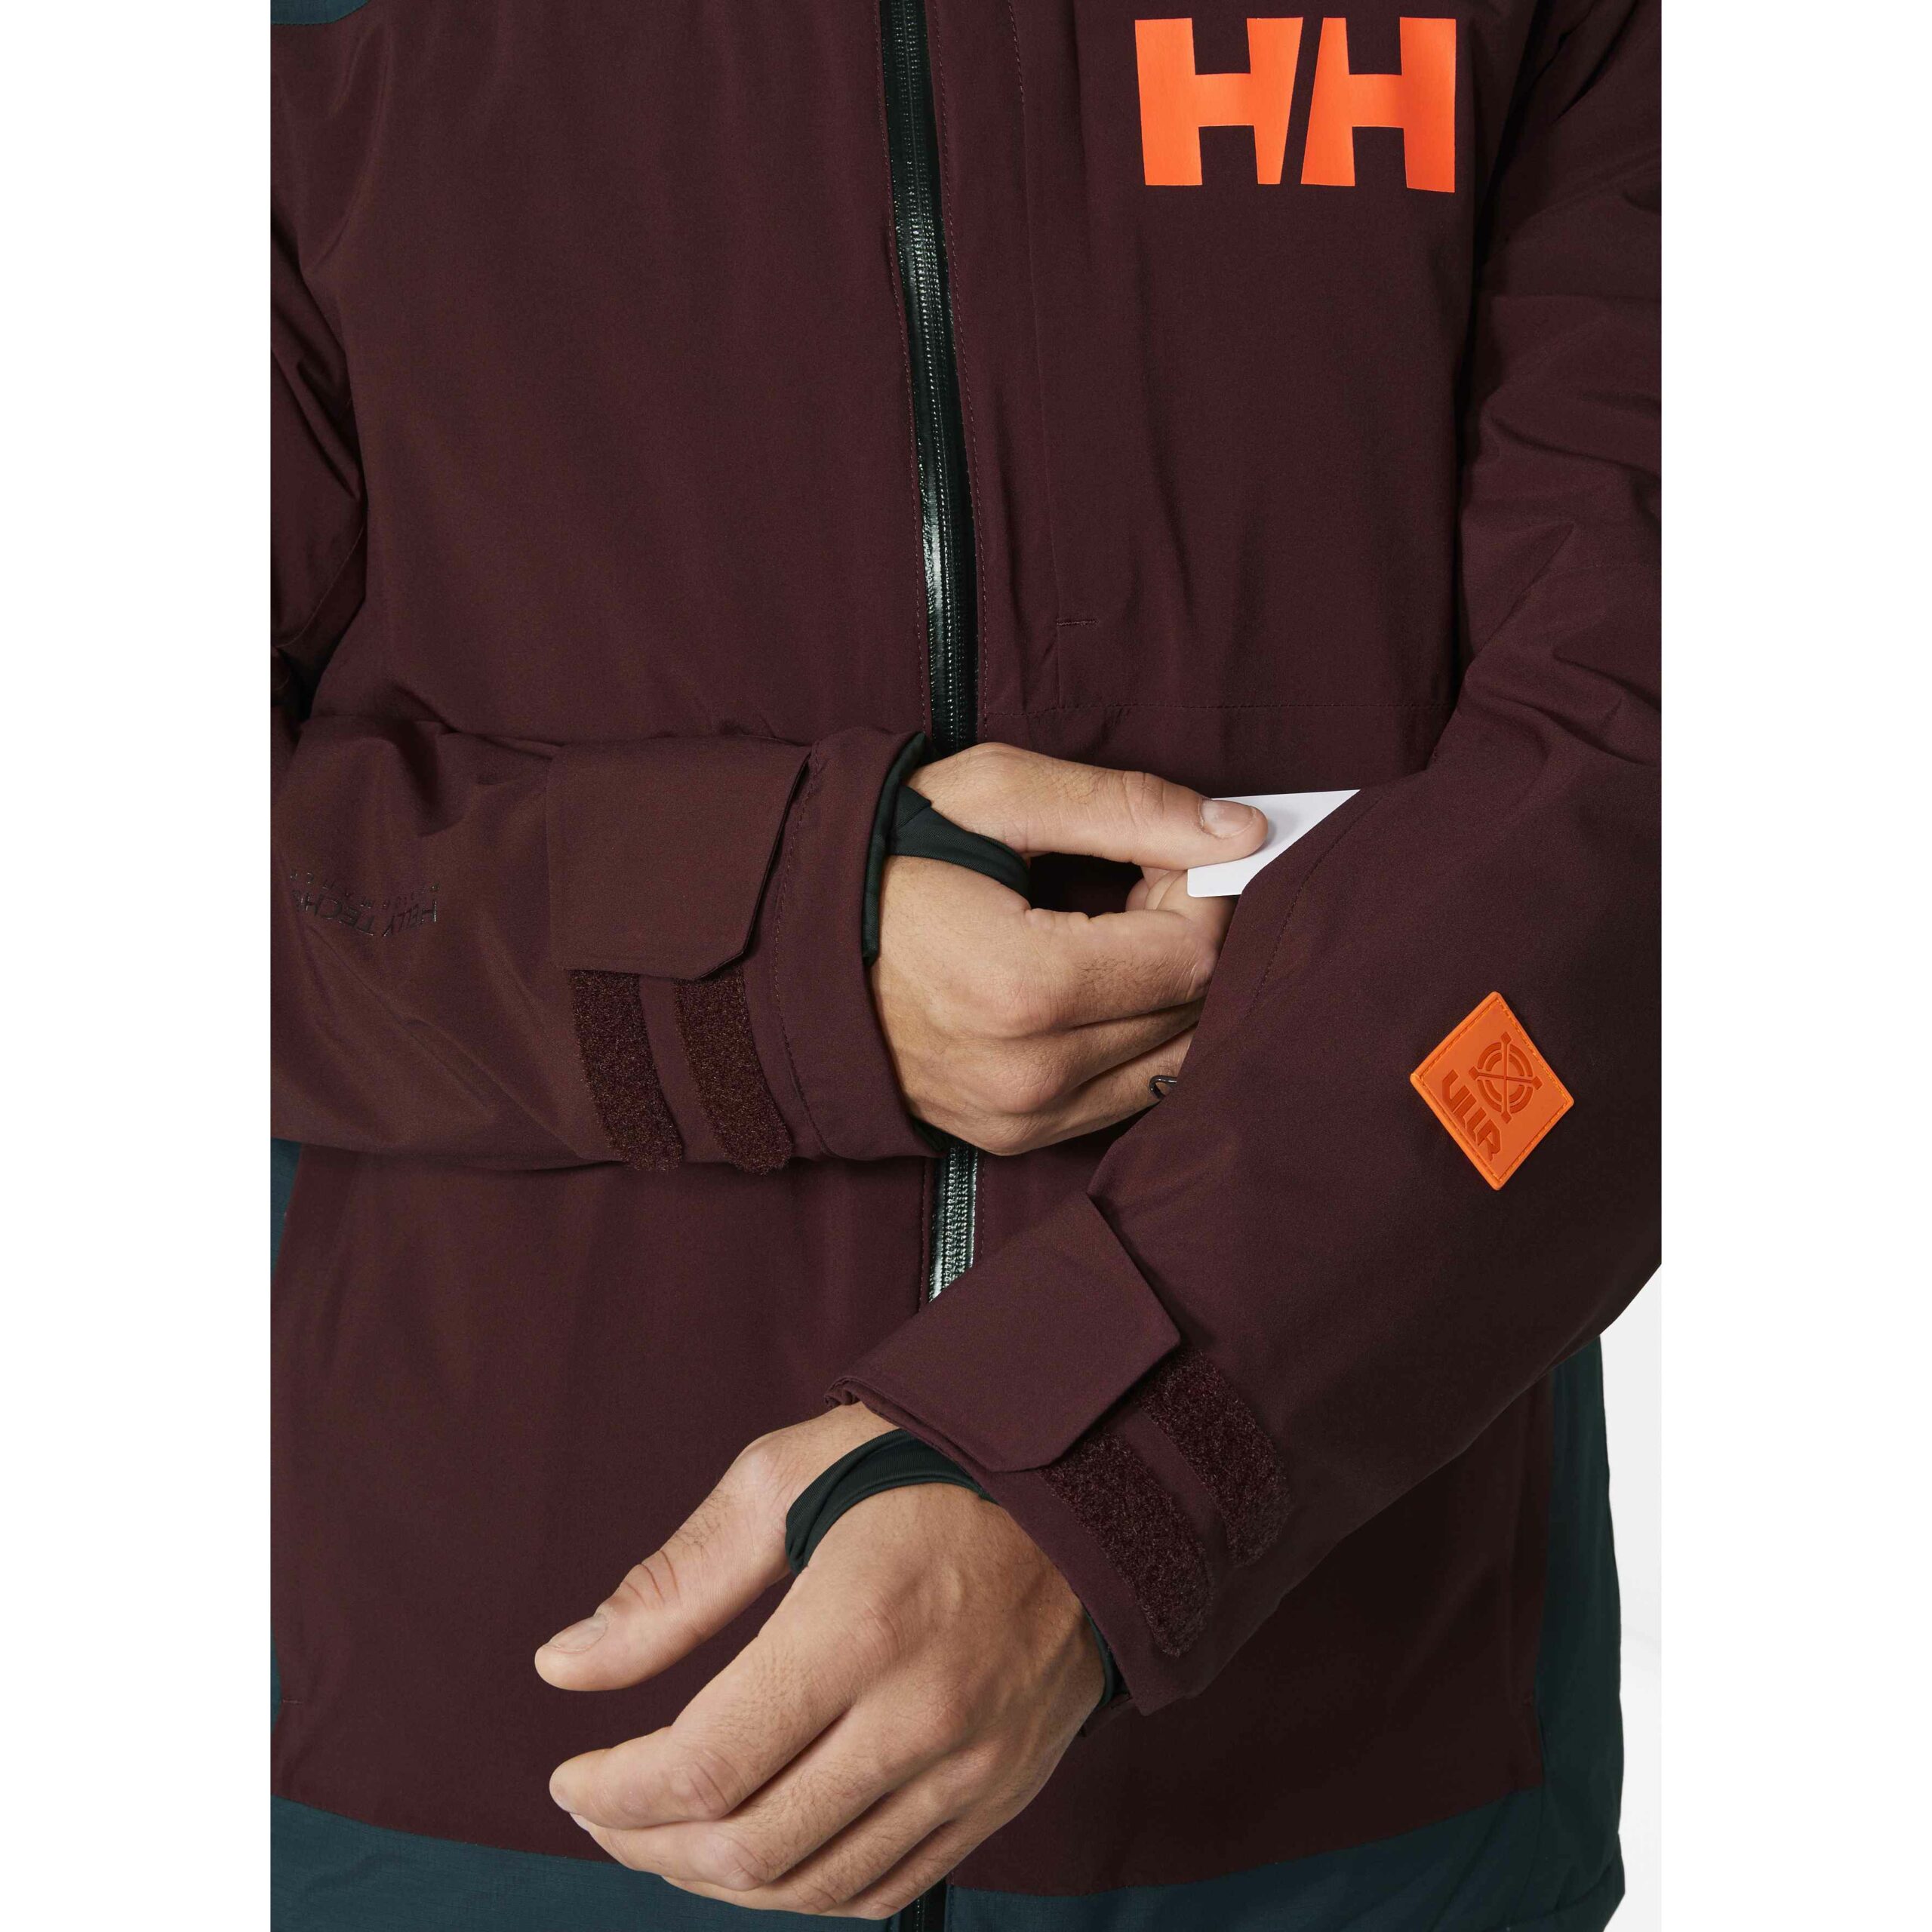 Helly Hansen Powdreamer 2.0 Jacket